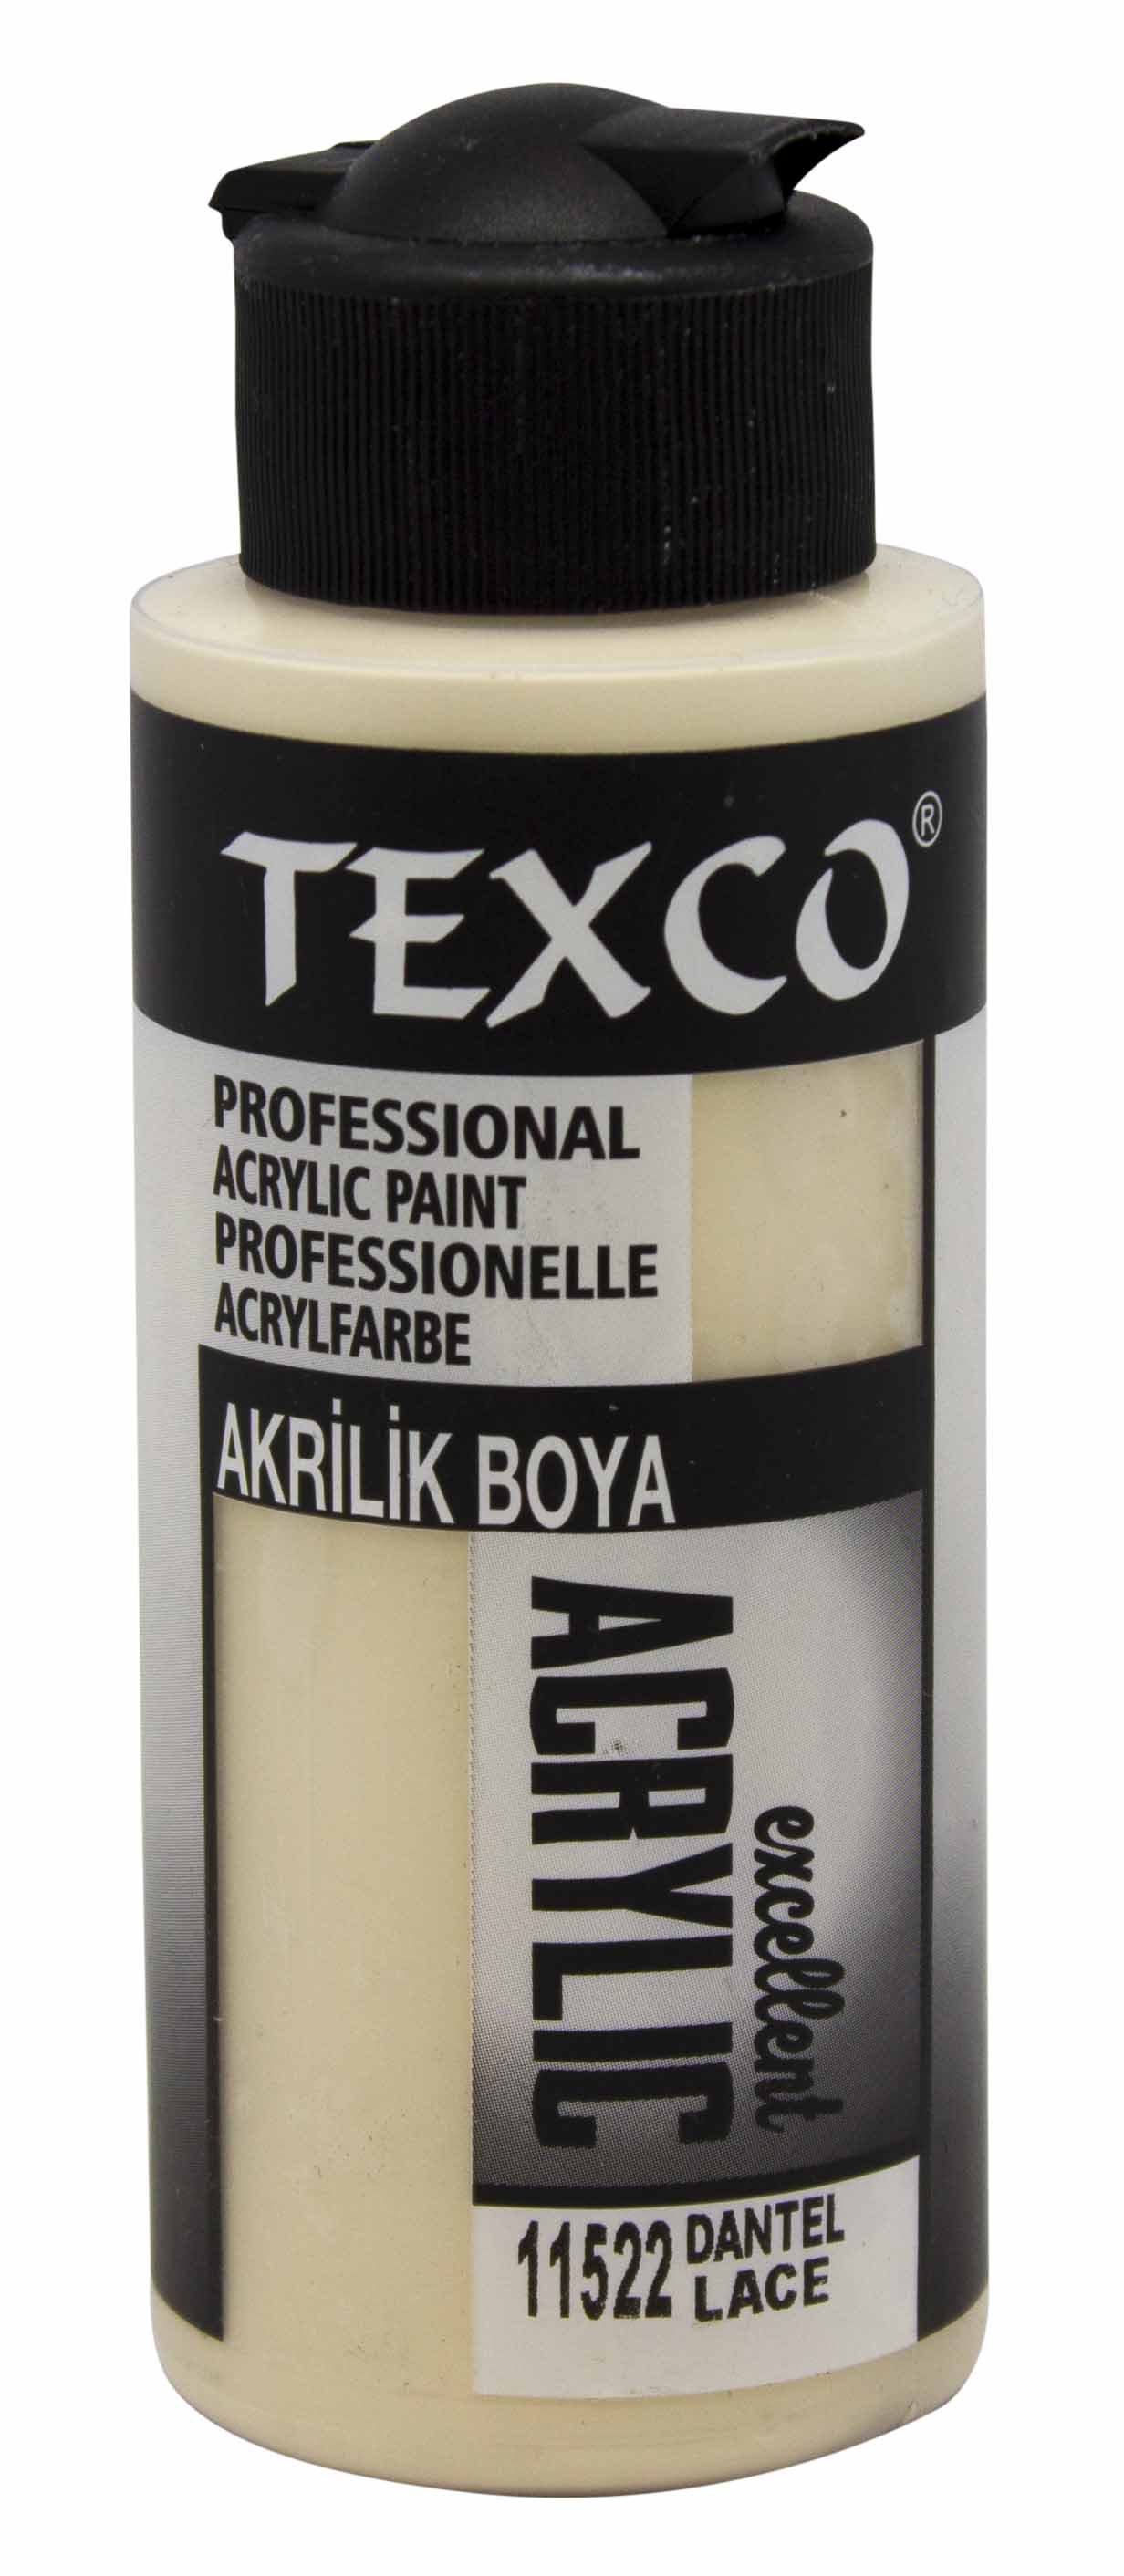 Texco Excellent Akrilik Boya 11522-Dantel 110 cc